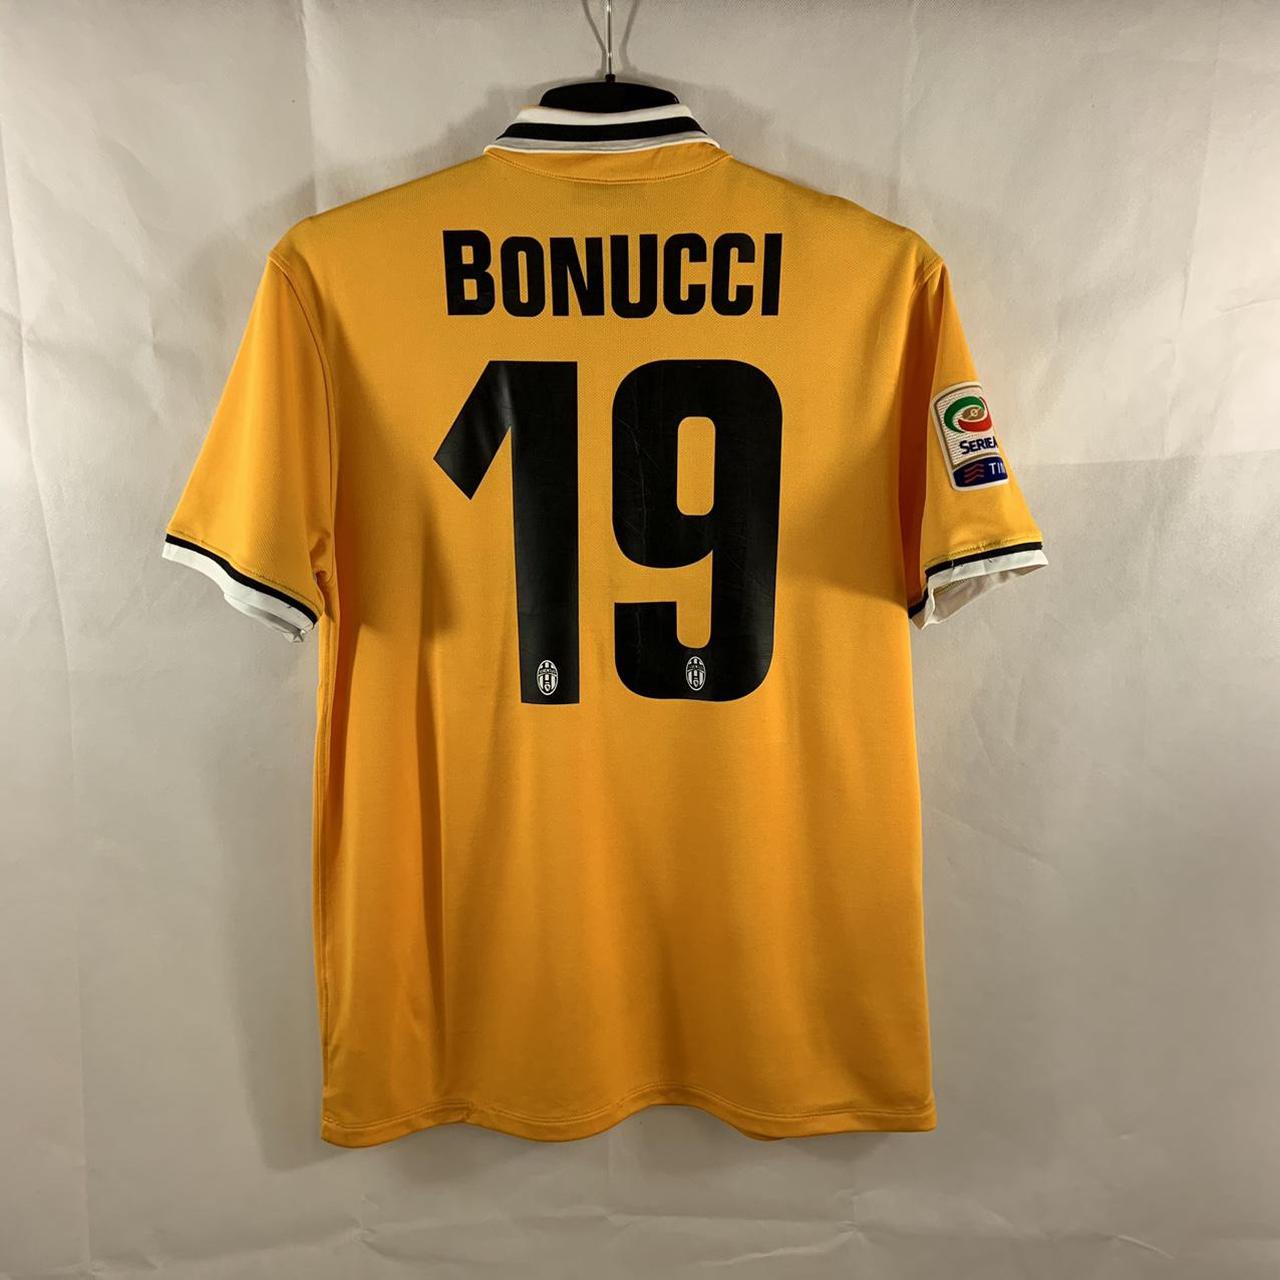 Juventus Bonucci 19 Away Football Shirt 2013/14... - Depop